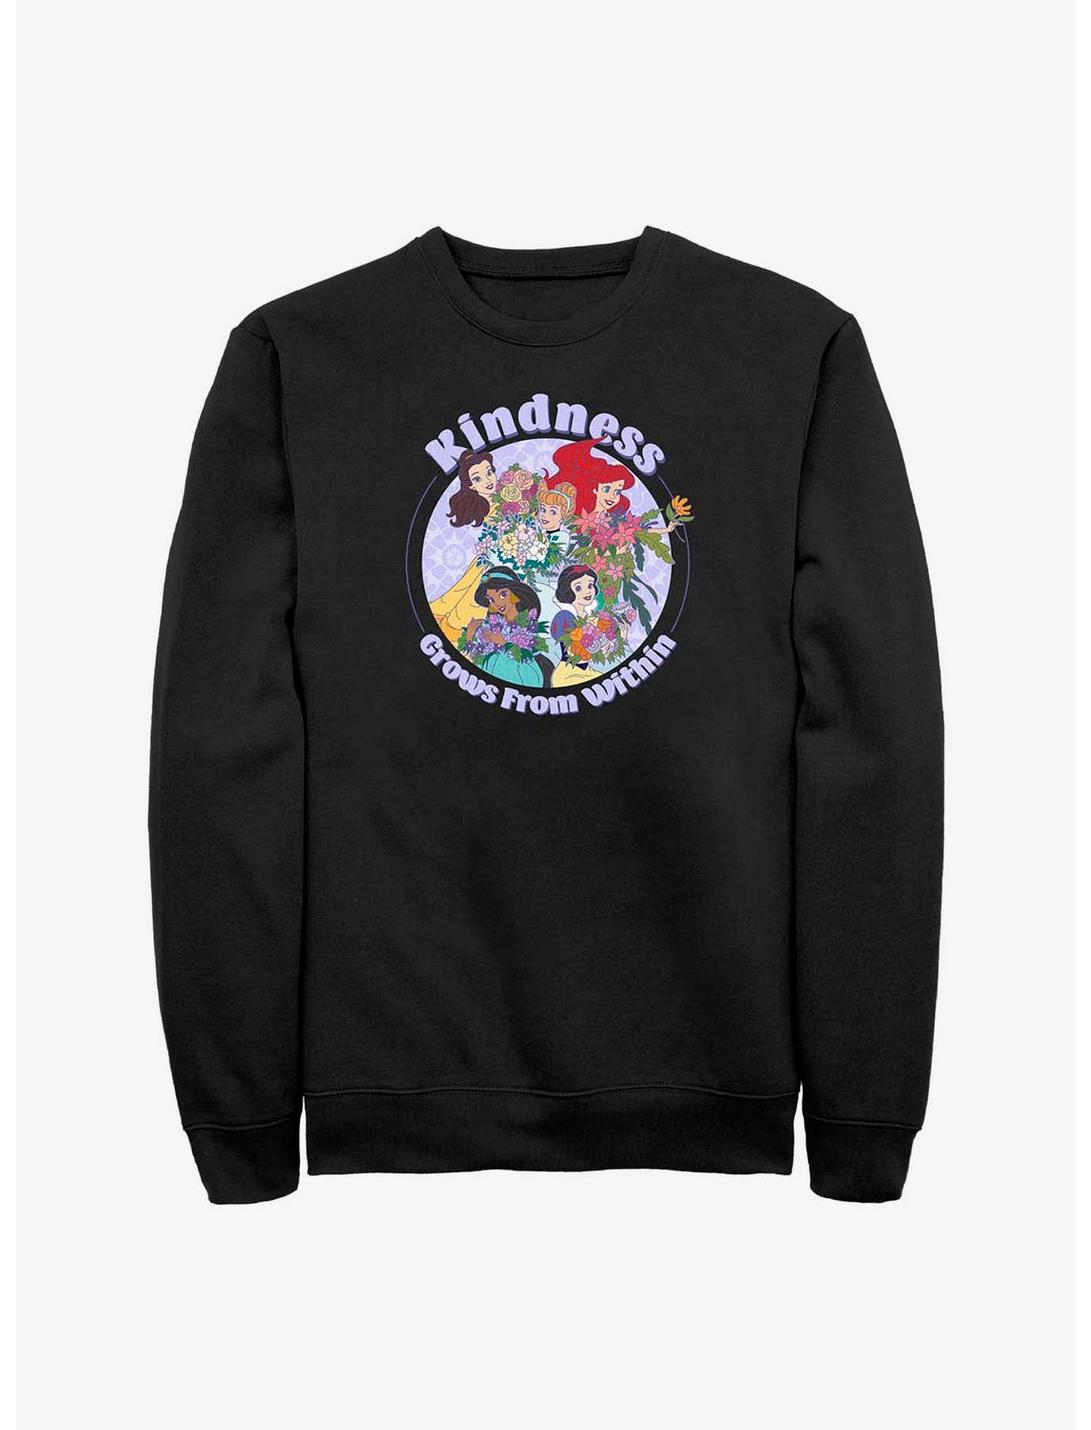 Disney 100 Princesses Kindness Sweatshirt, BLACK, hi-res